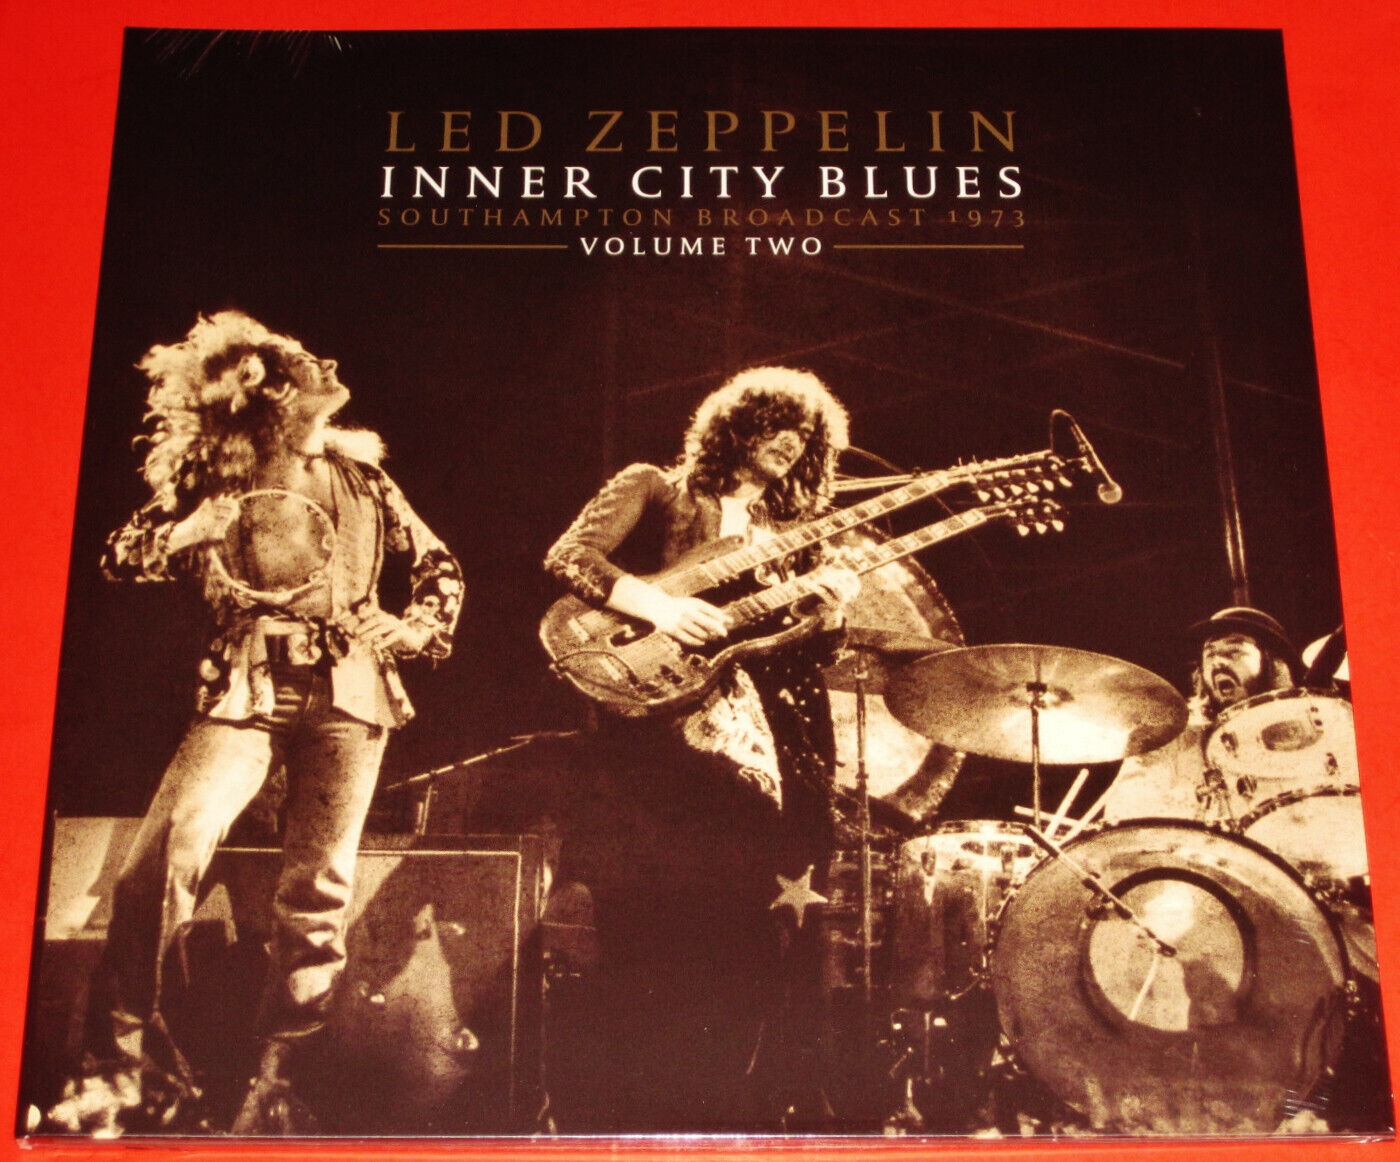 Led Zeppelin: Inner City Blues Southampton 1973, Volume Two 2 LP White Vinyl NEW